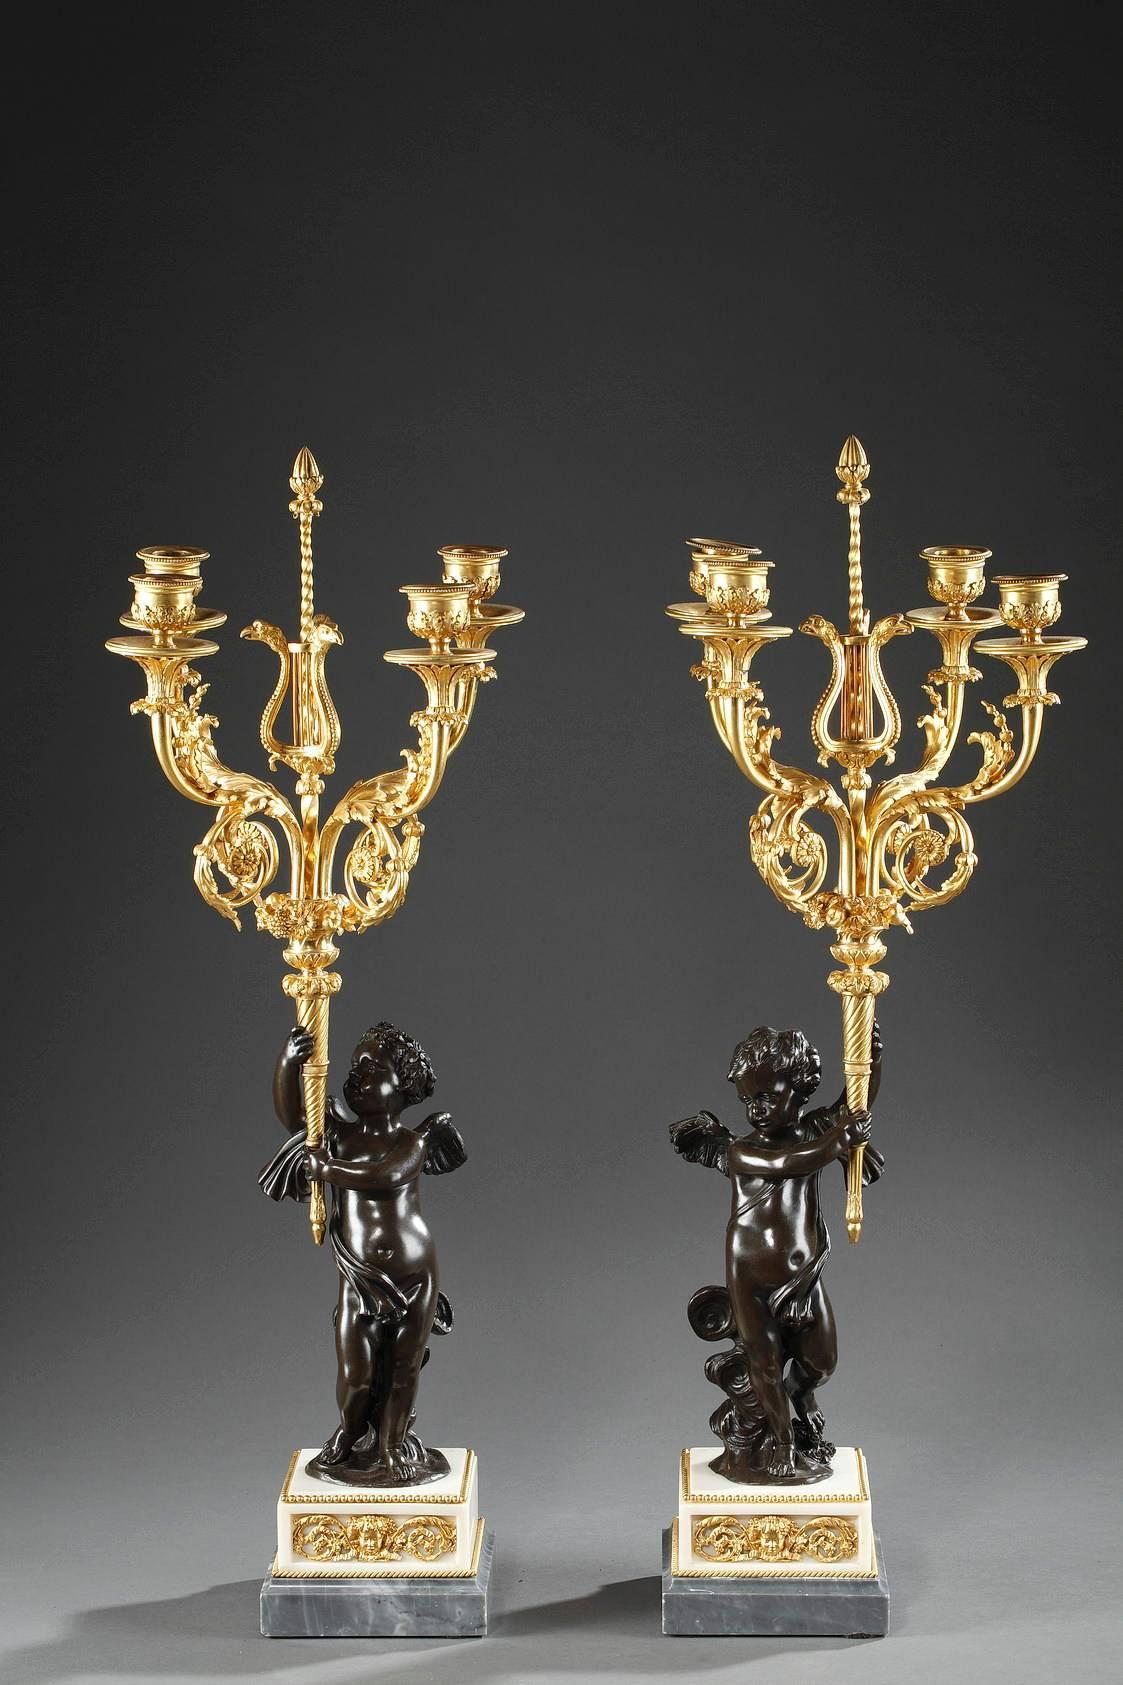 Exquise paire de candélabres, composée d'un jeune Cupidon sur des nuages en bronze patiné, tenant une torche en bronze doré. Un vase avec des fleurs et des fruits se trouve à la place de la flamme de la torche, et quatre bras de chandelier sortent